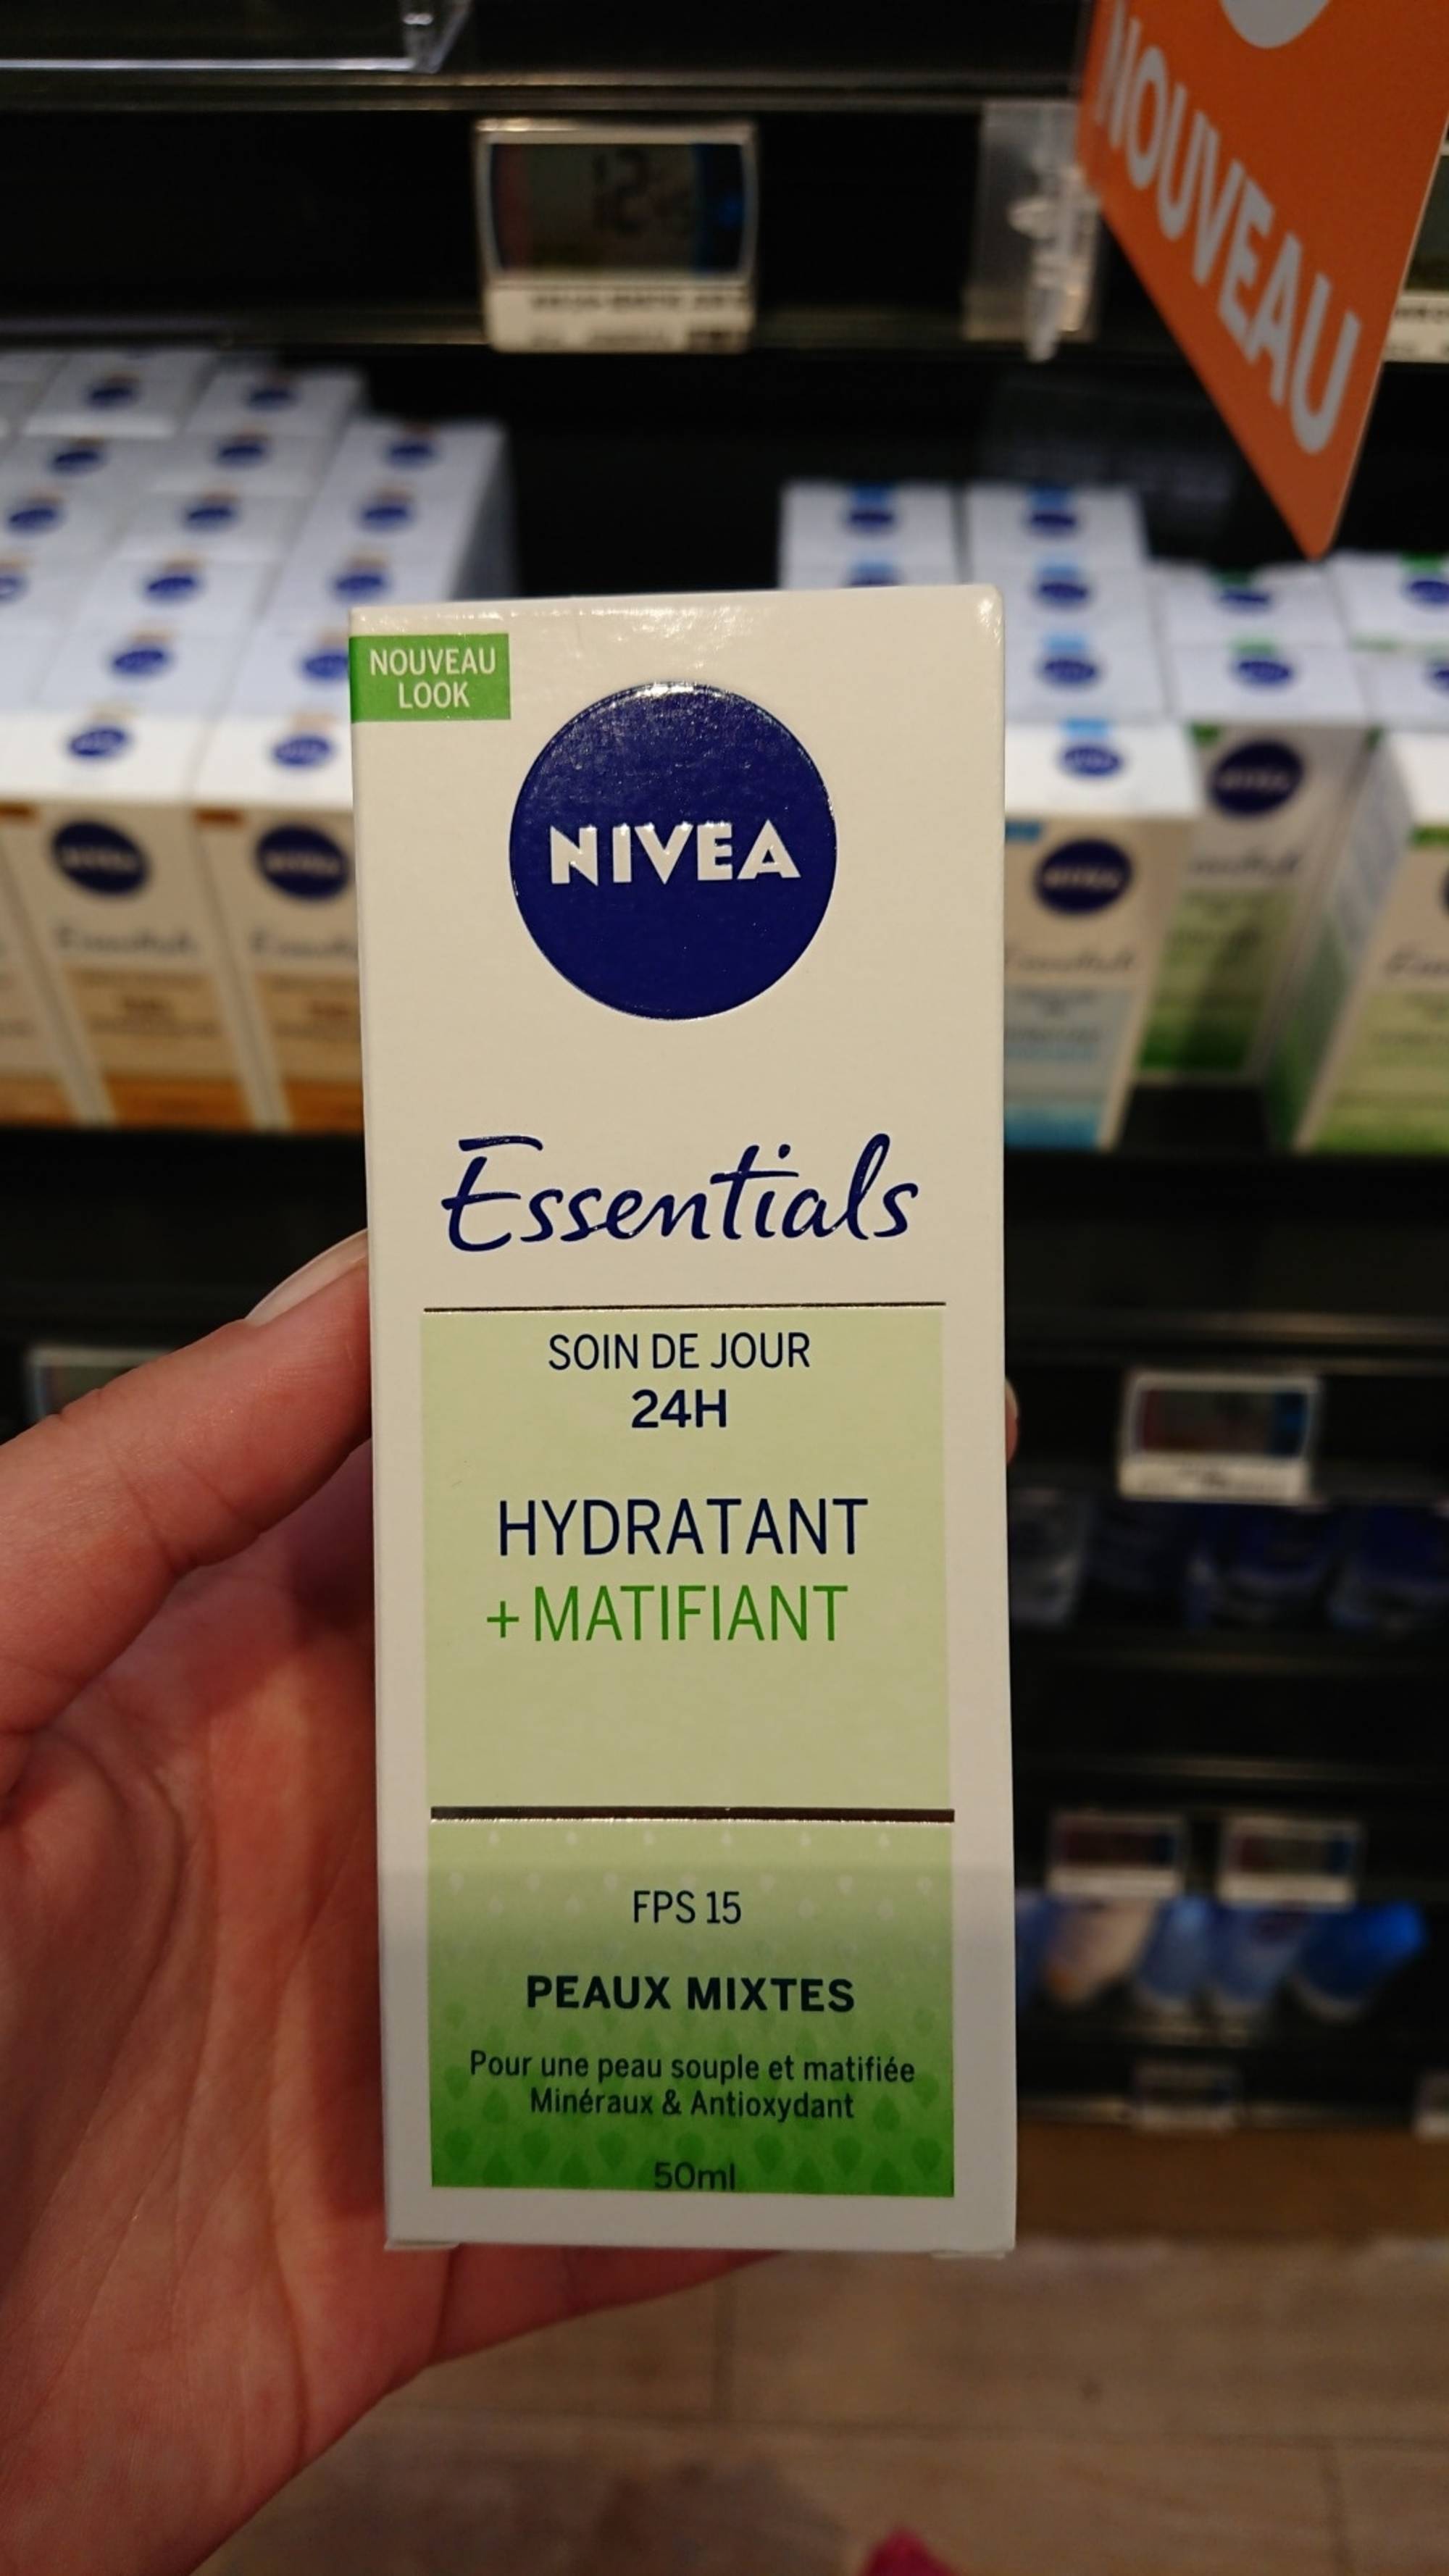 NIVEA - Essentials - Soin de jour 24h hydratant + matifiant